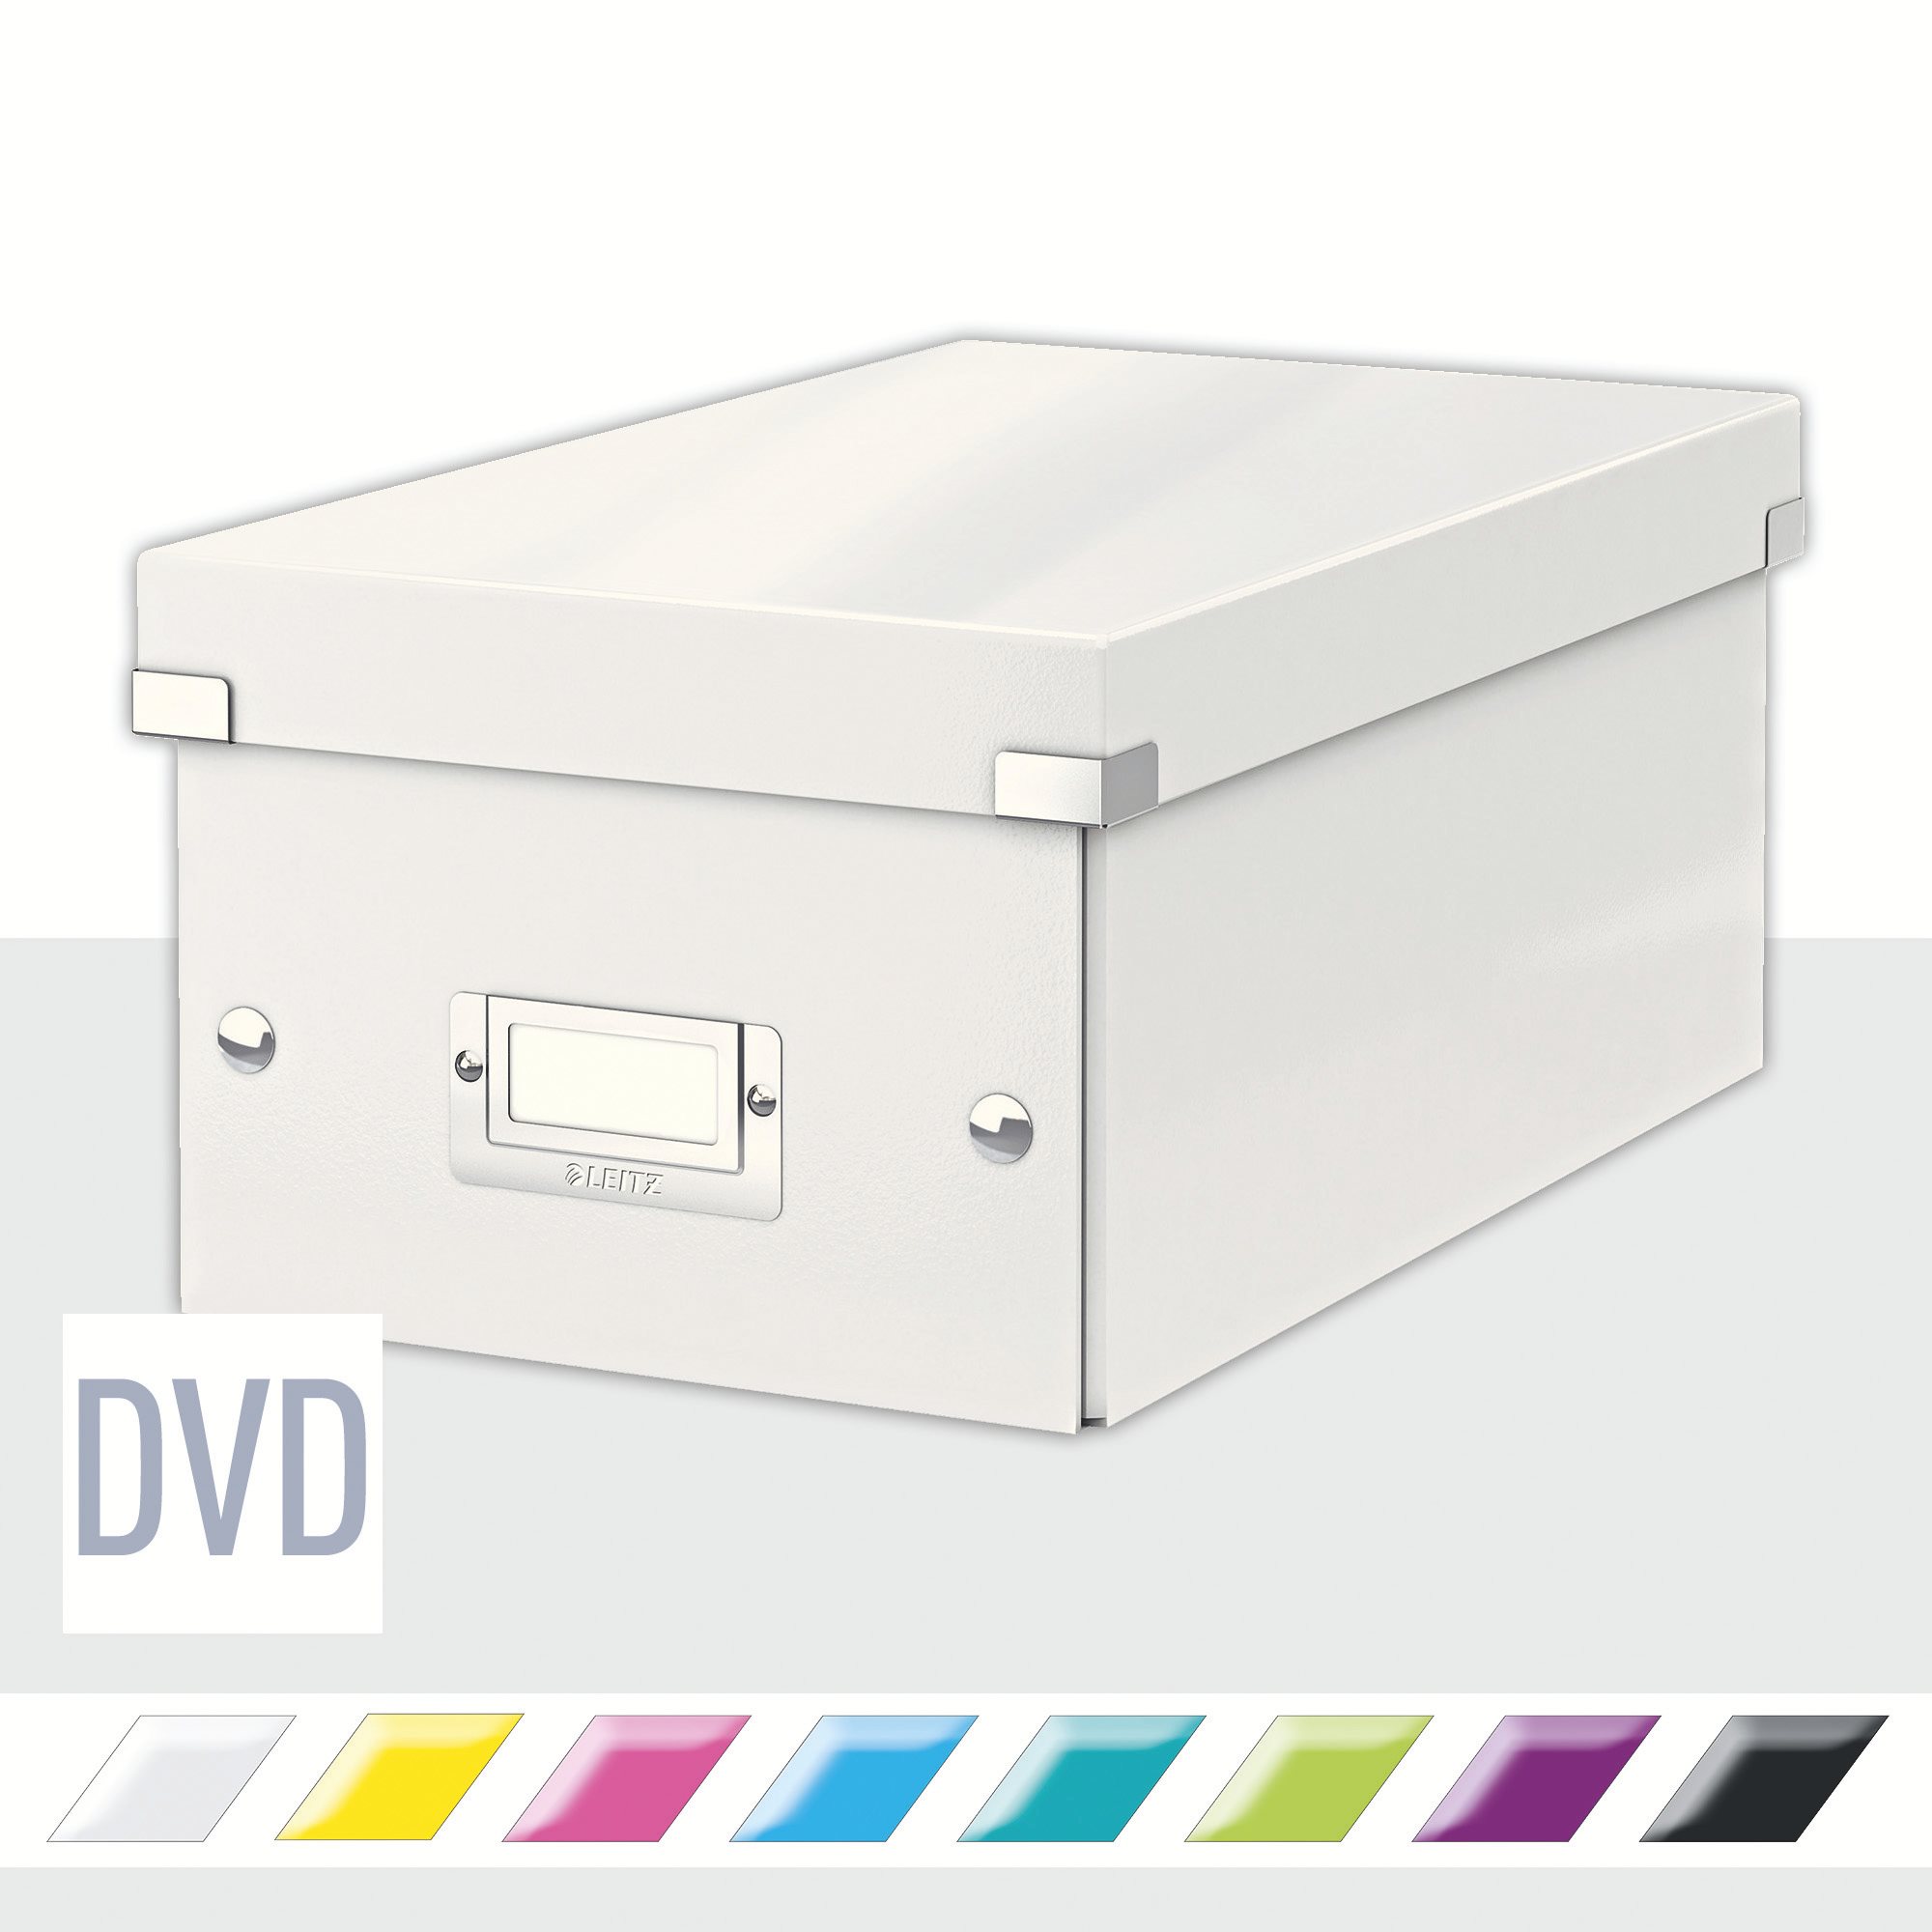 DVD Disc fehér fedeles tárolódoboz, hossz 35 cm Click&Store - Leitz